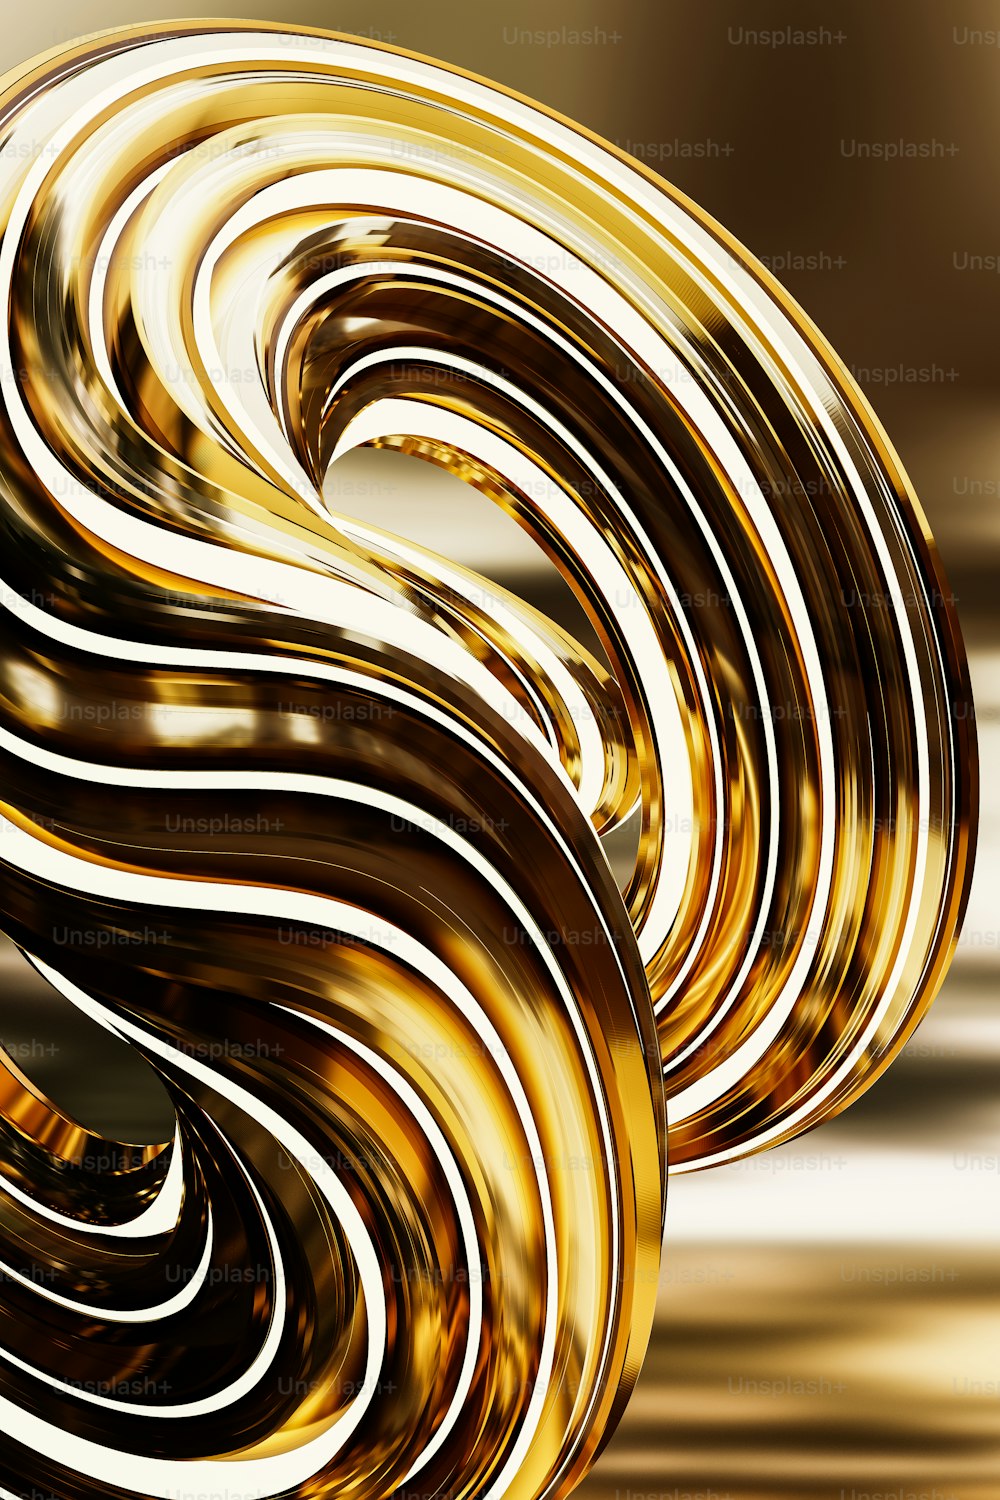 Un fond doré abstrait avec un design en spirale